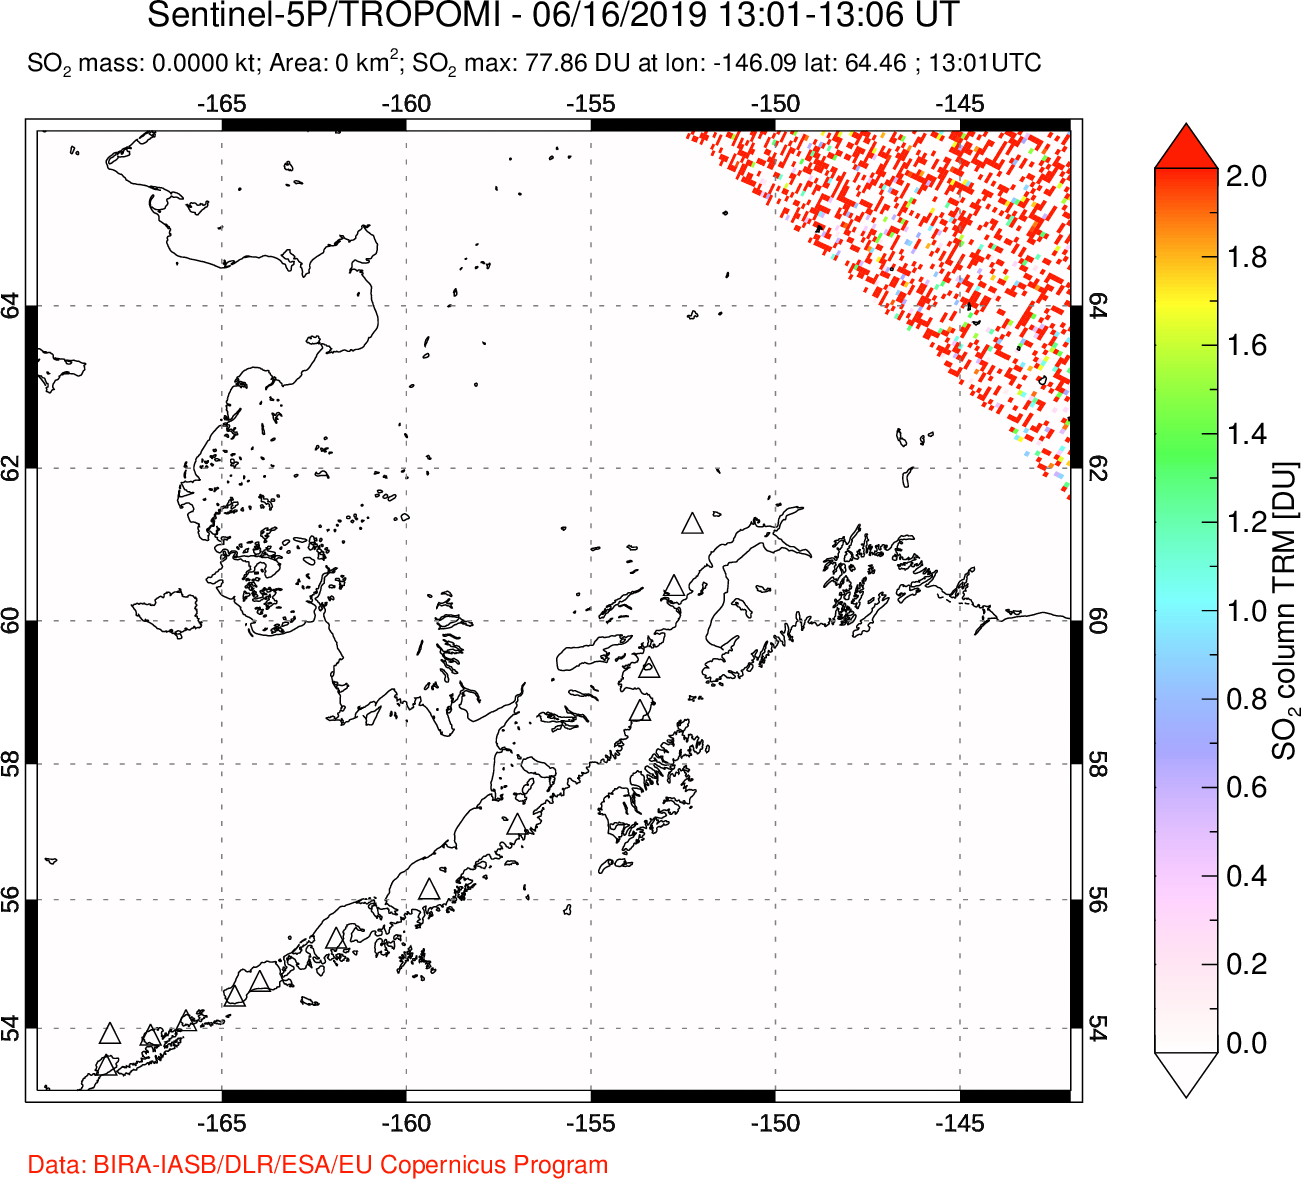 A sulfur dioxide image over Alaska, USA on Jun 16, 2019.